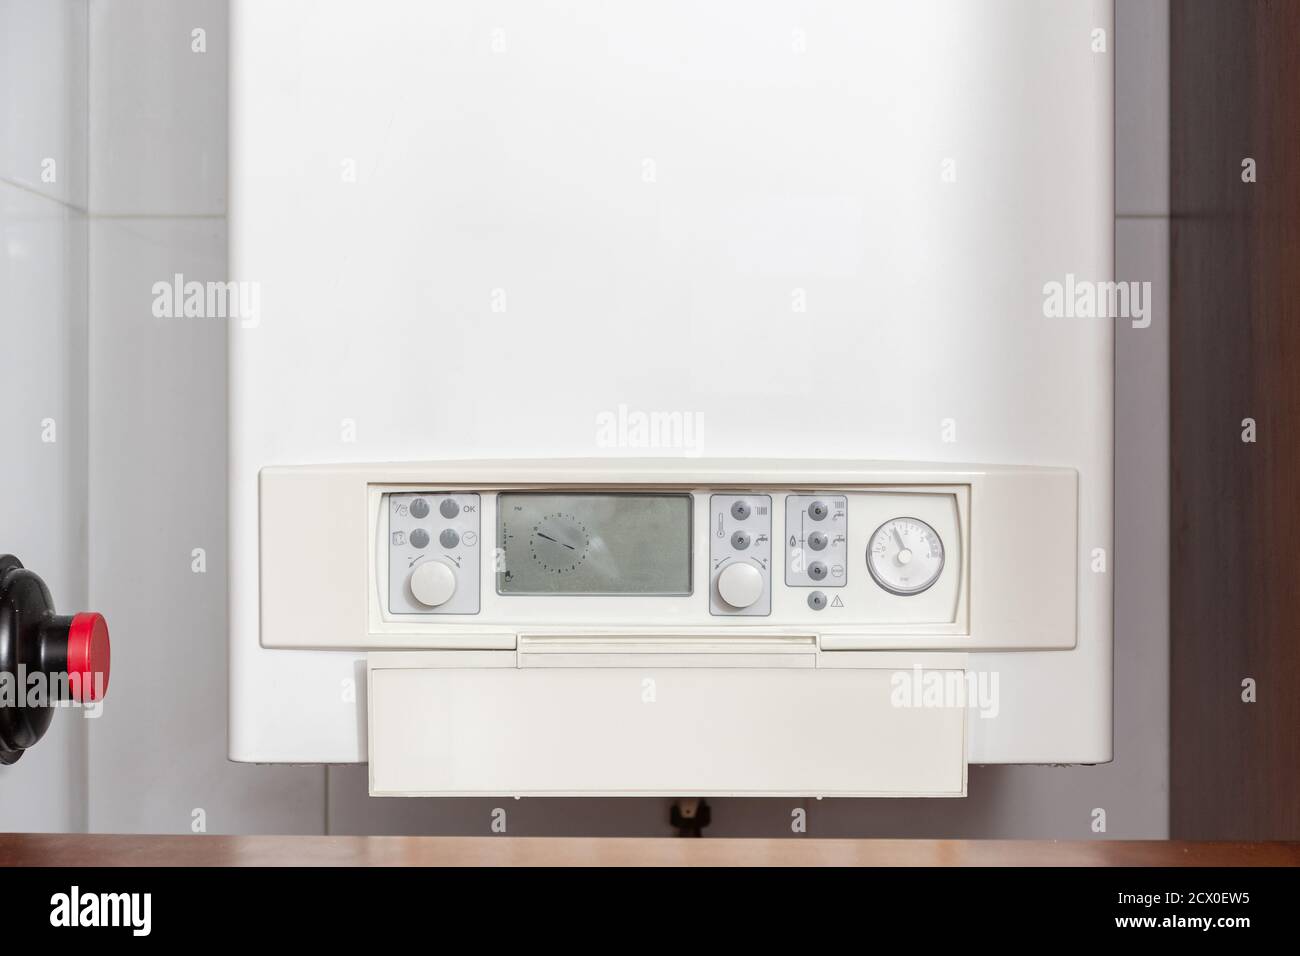 Calentador de agua de gas, panel de control o caldera de gas en un casa interior Foto de stock